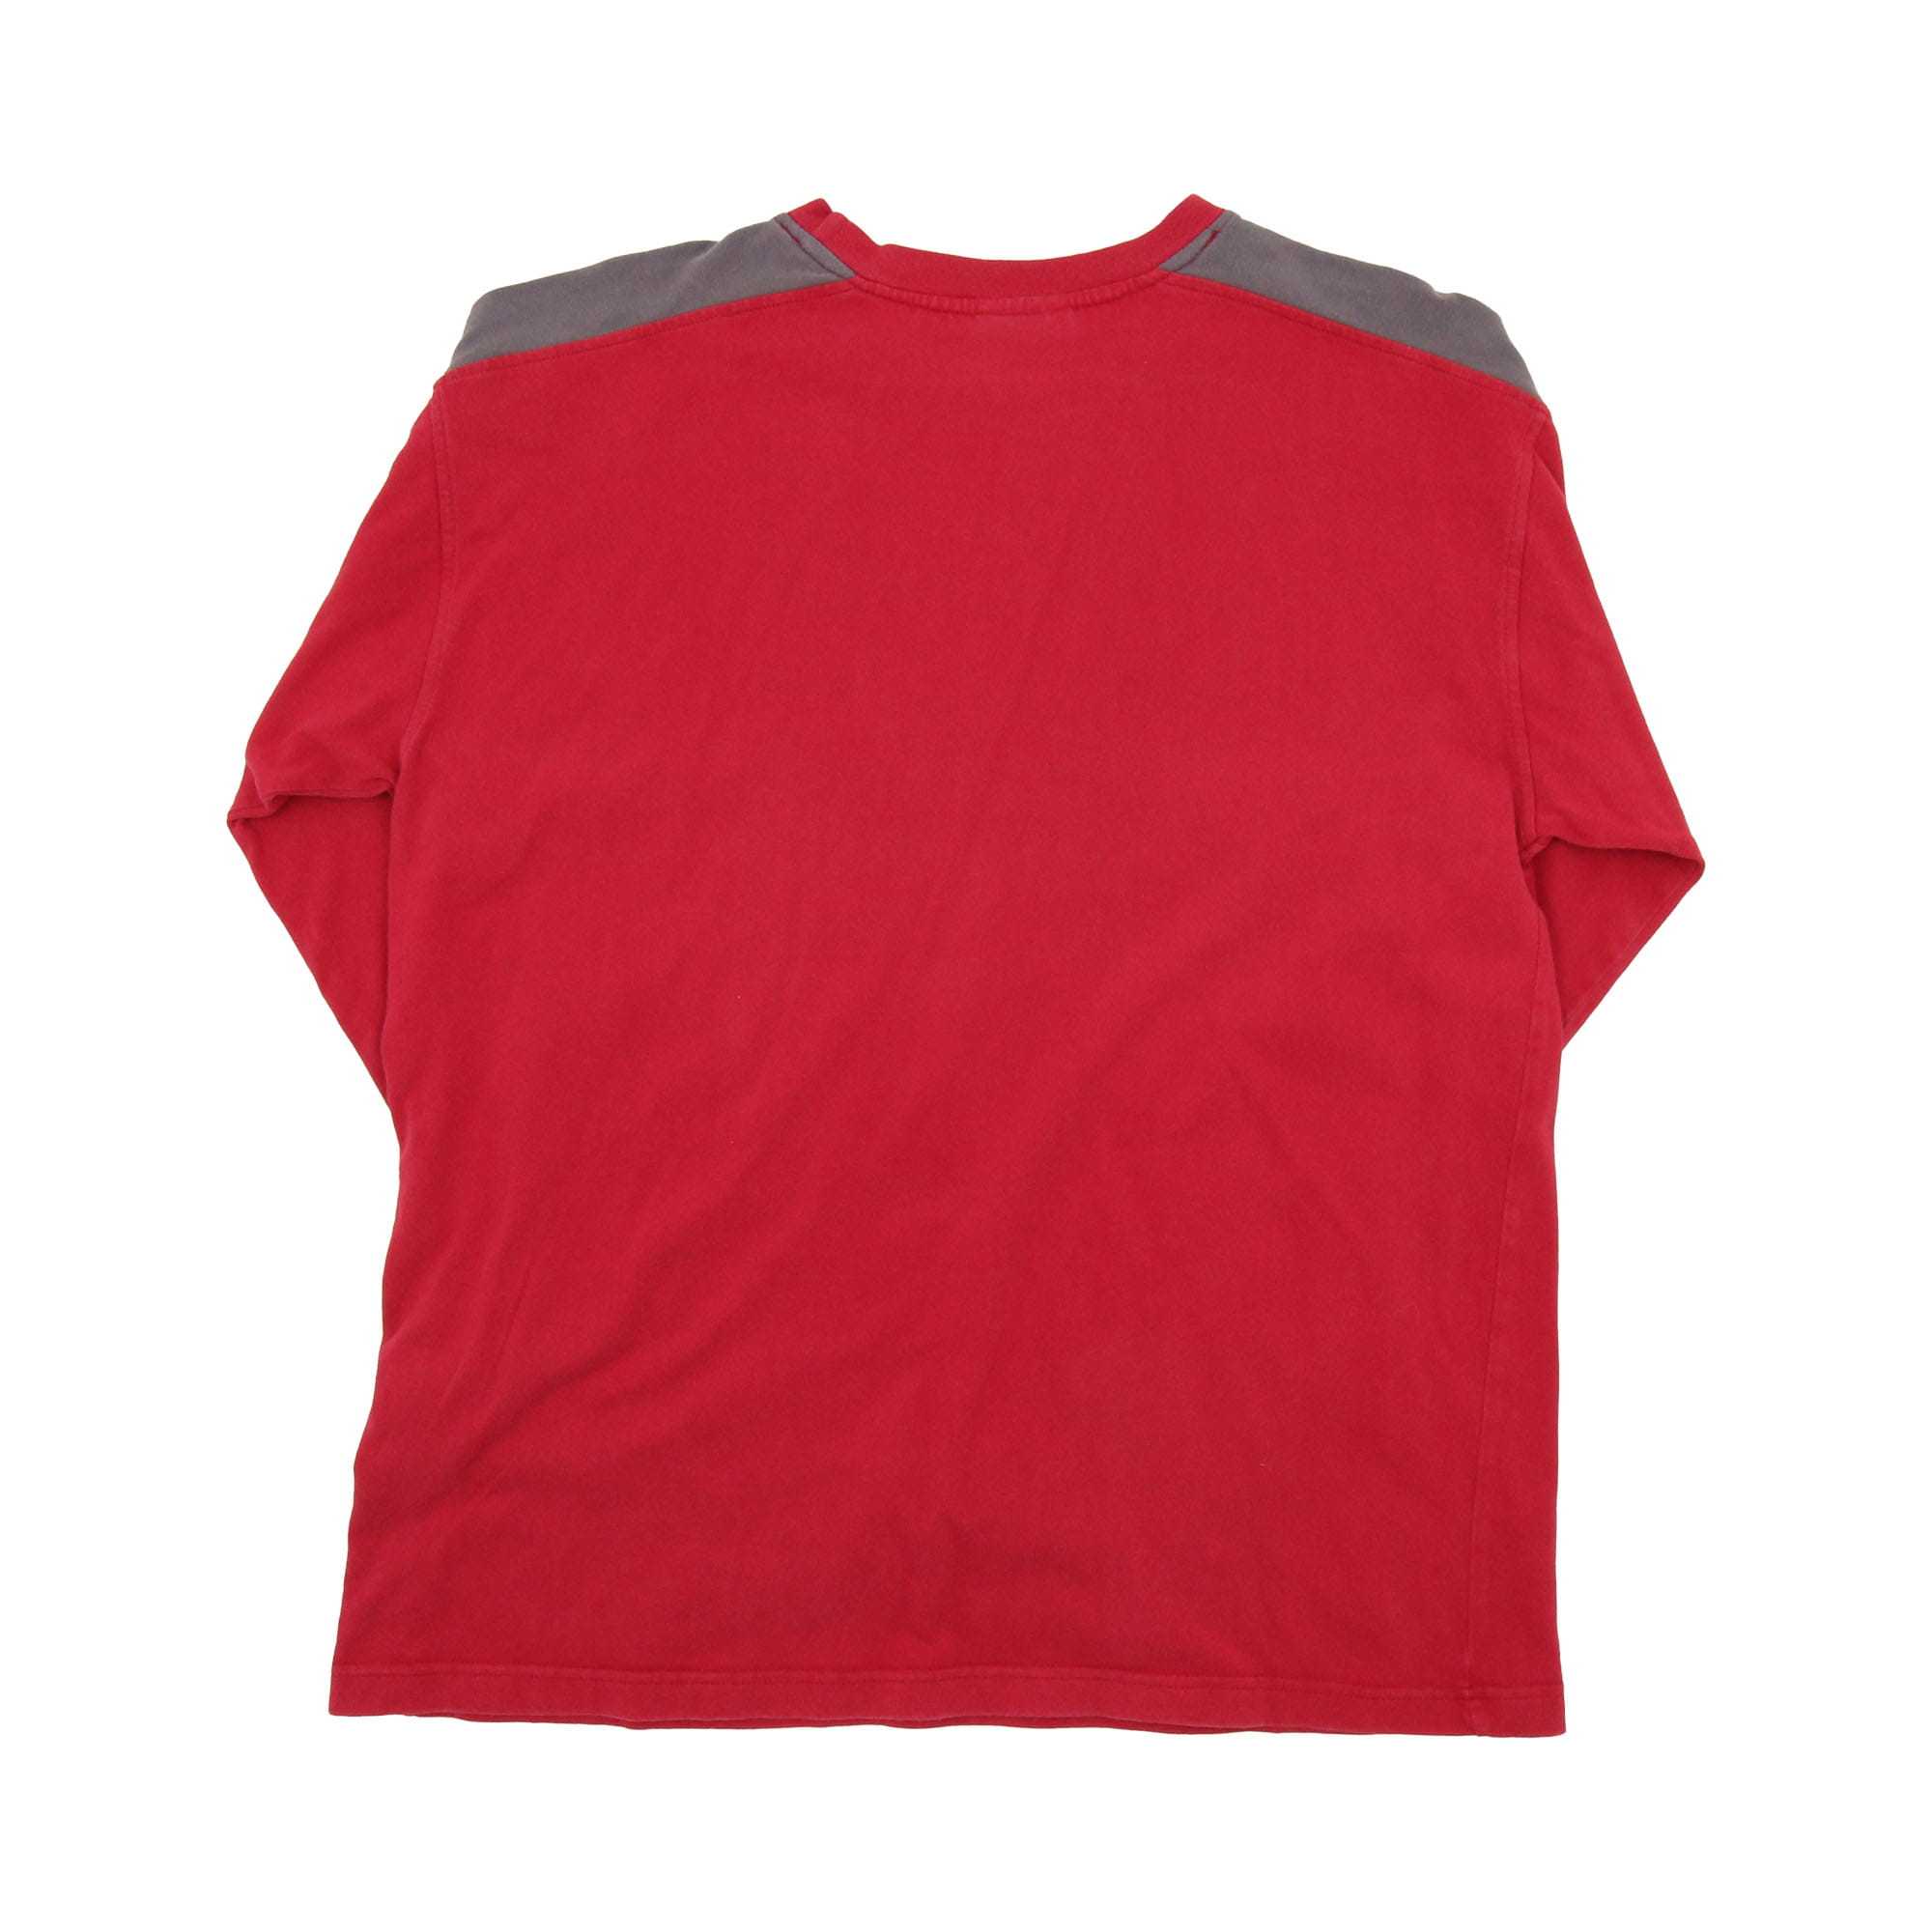 Reebok Sweatshirt Red -  M/L